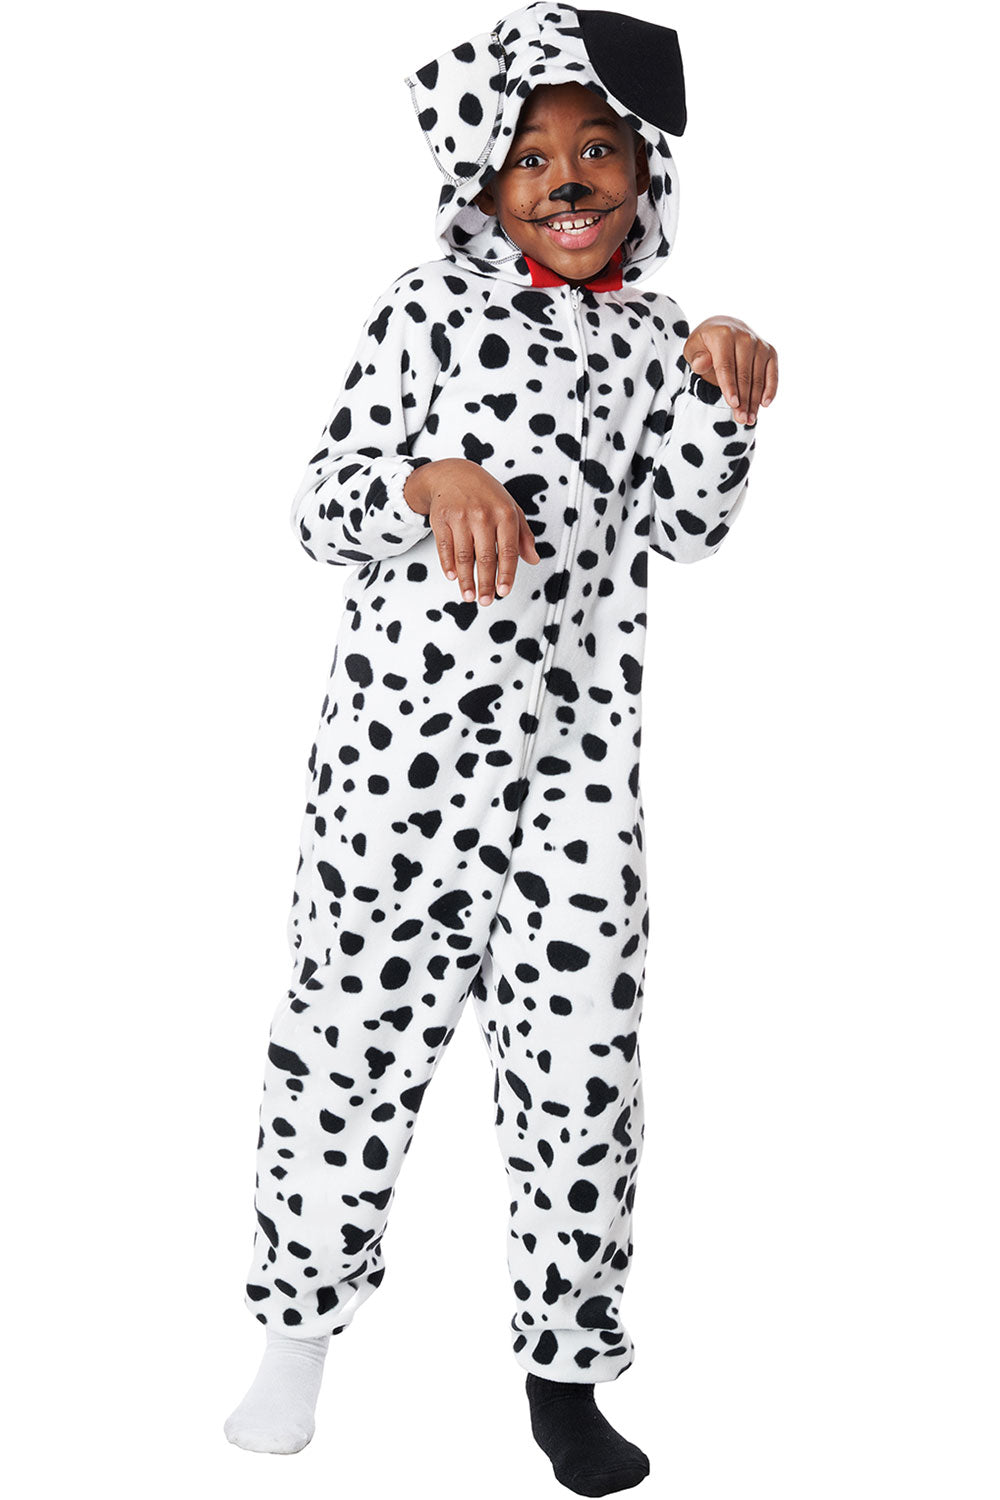 Dalmatian Pup Onesie / Child California Costume 3221-178